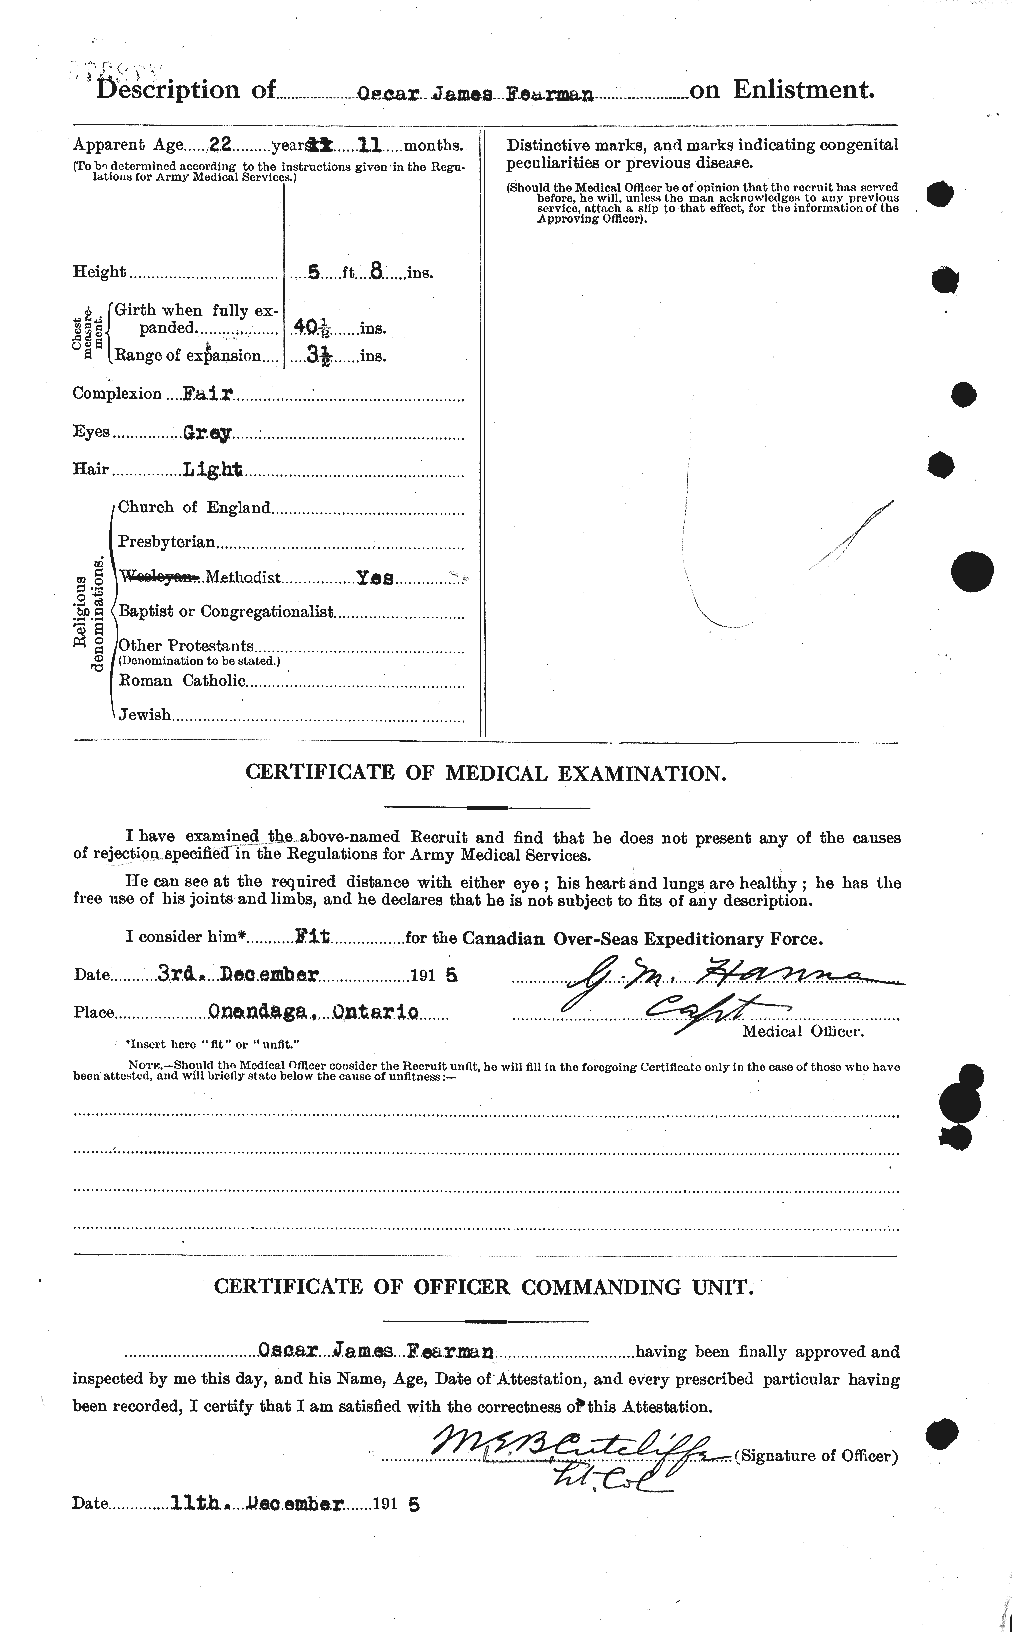 Dossiers du Personnel de la Première Guerre mondiale - CEC 319562b